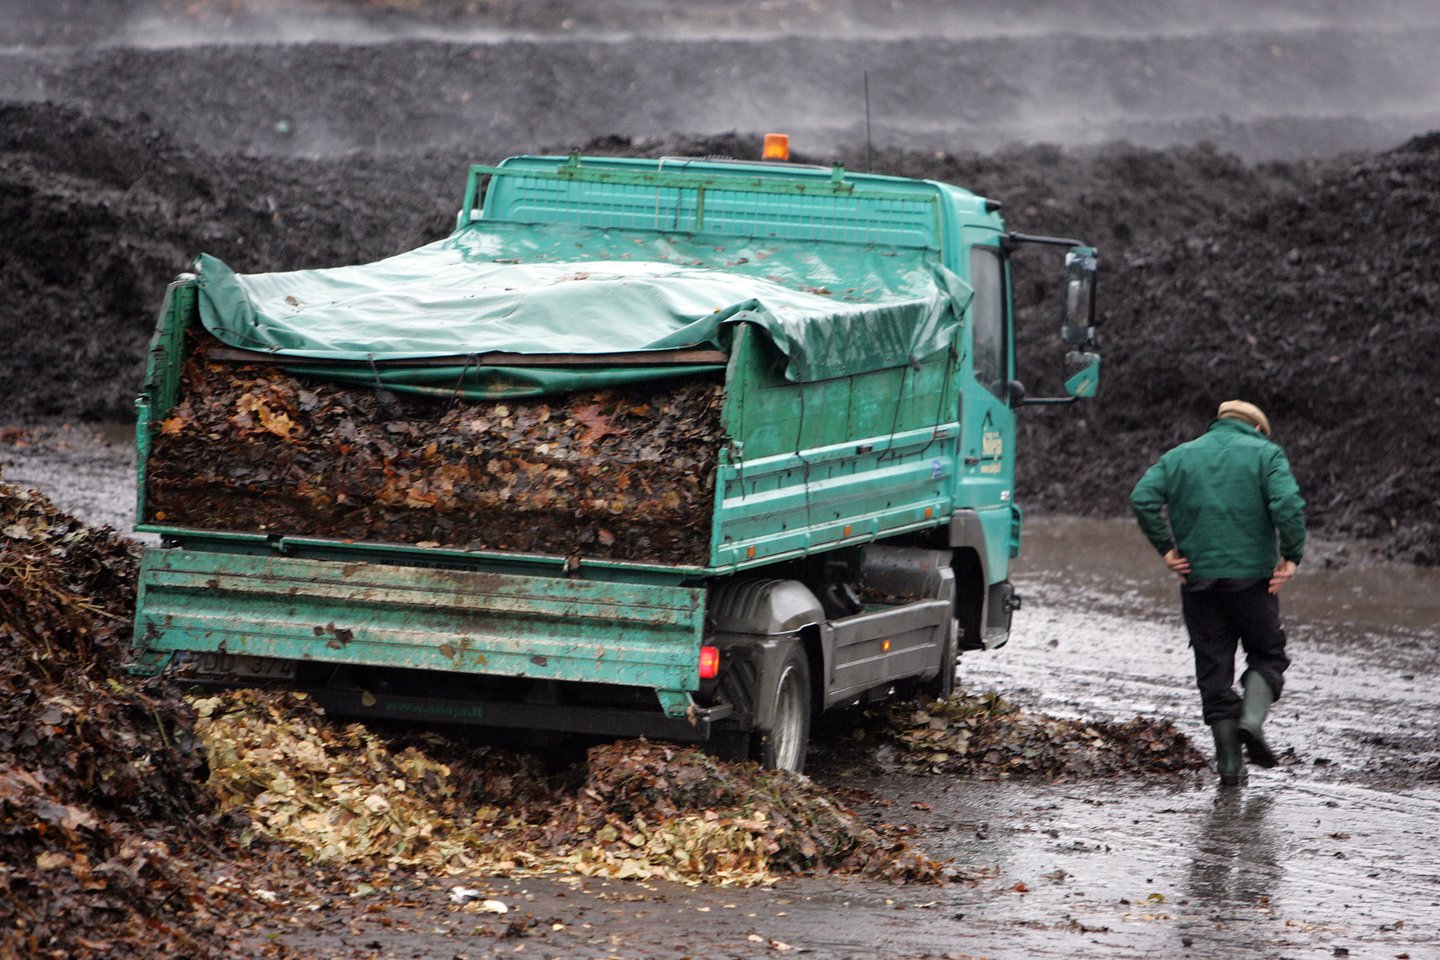 Kompostavimas yra vienas efektyviausių atliekų tvarkymo būdų, užtikrinantis žiedinės ekonomikos principų įgyvendinimą. <br>V.Balkūno nuotr.